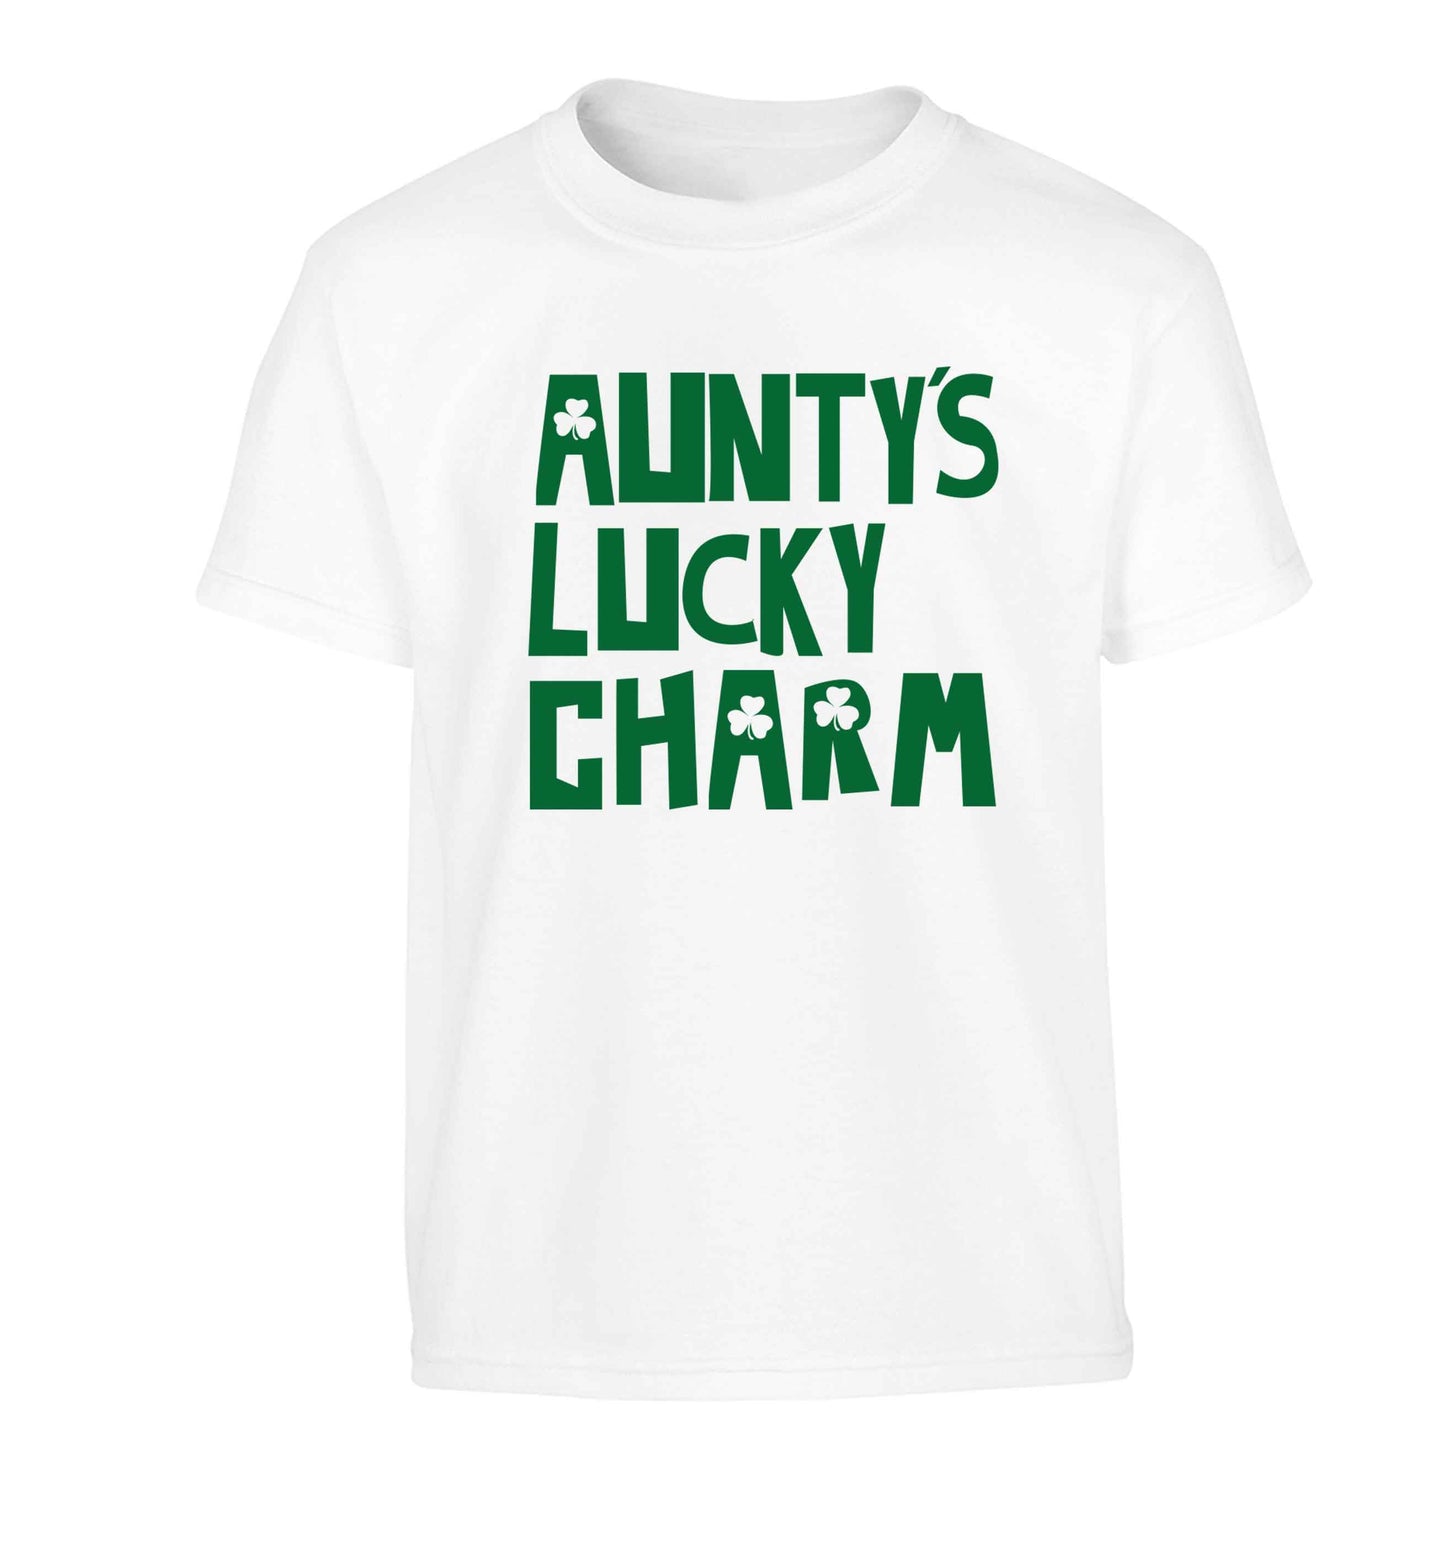 Aunty's lucky charm Children's white Tshirt 12-13 Years